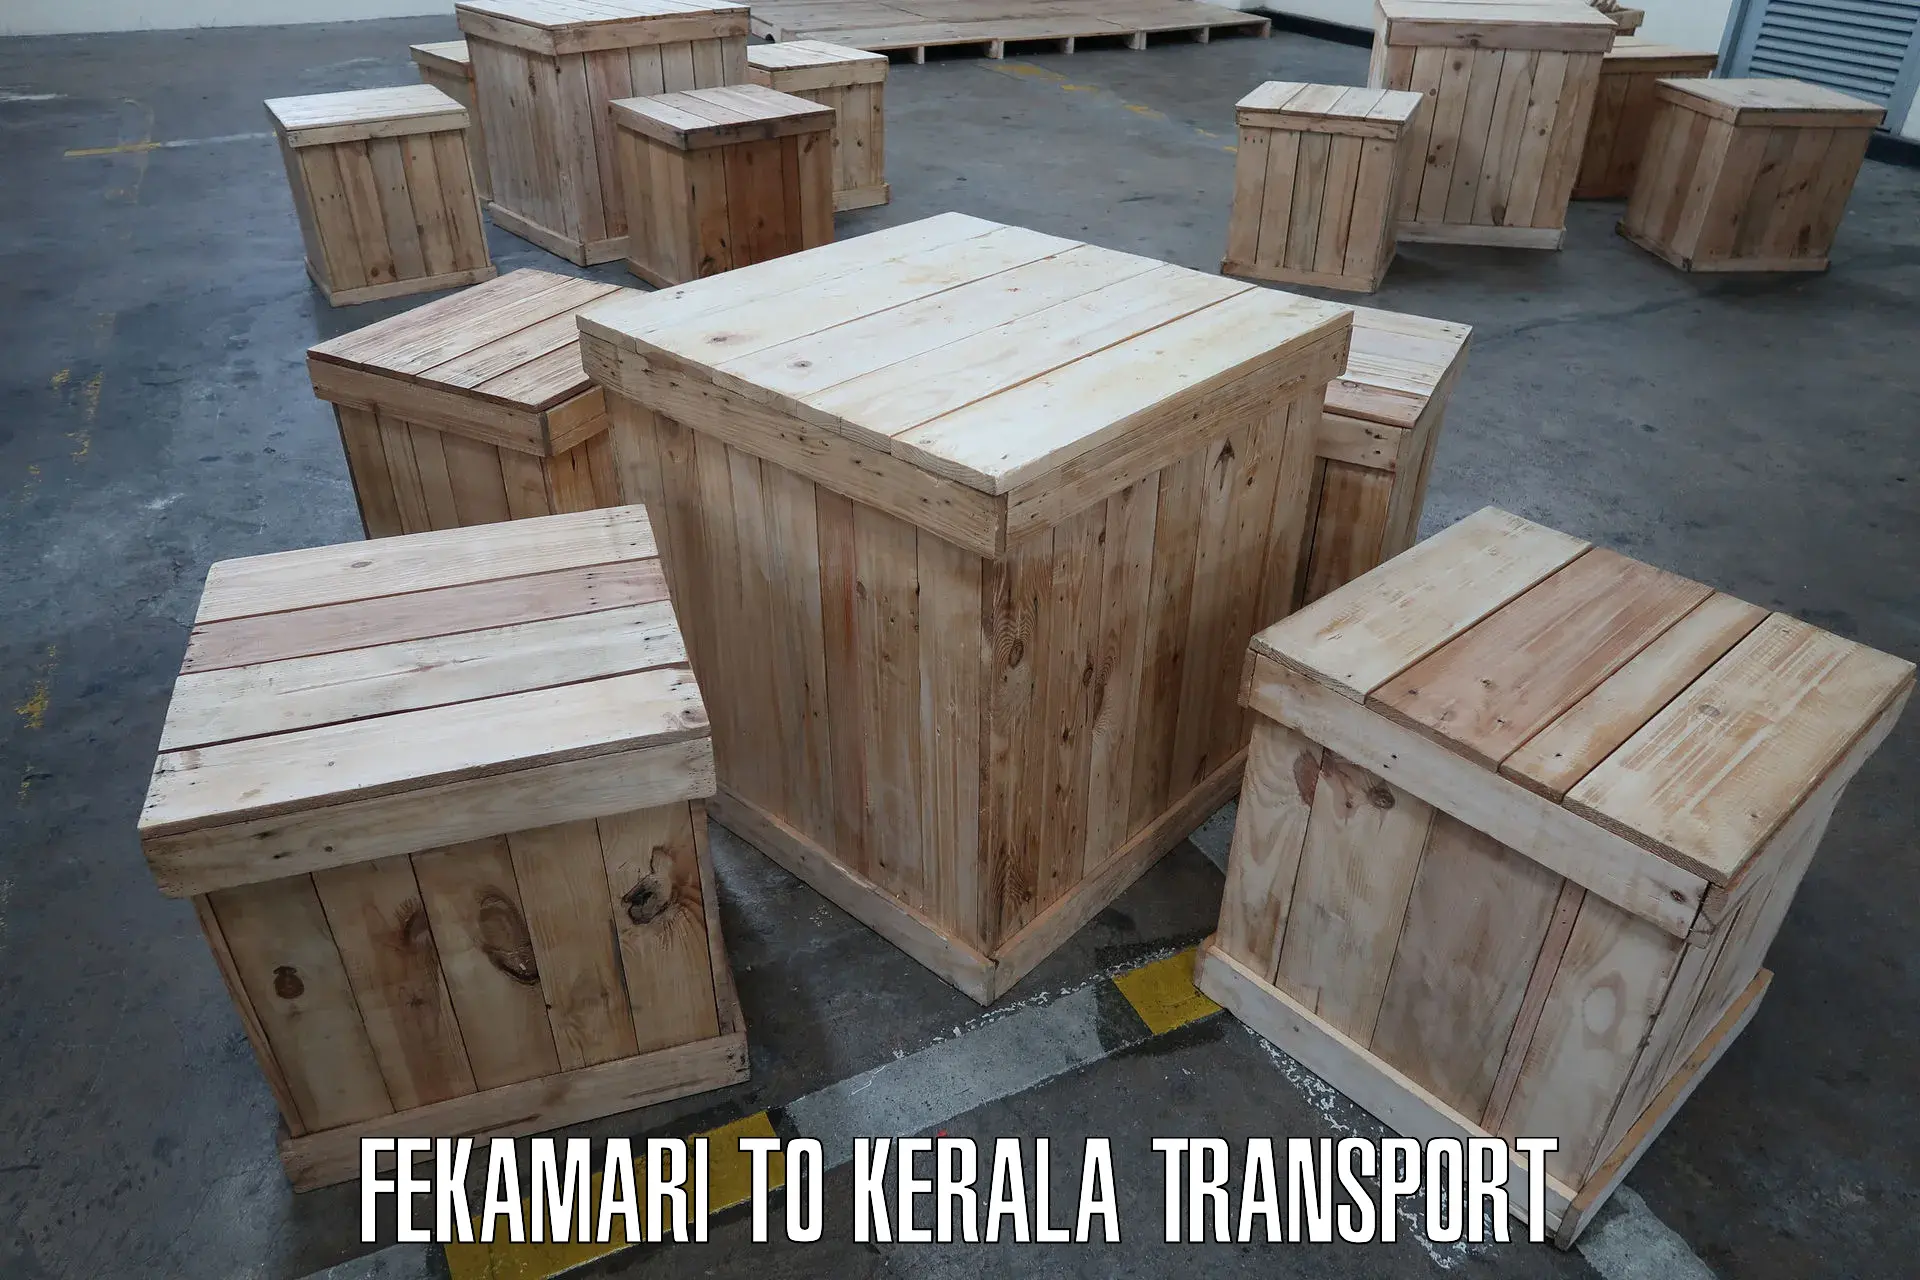 Container transport service Fekamari to Mundakayam